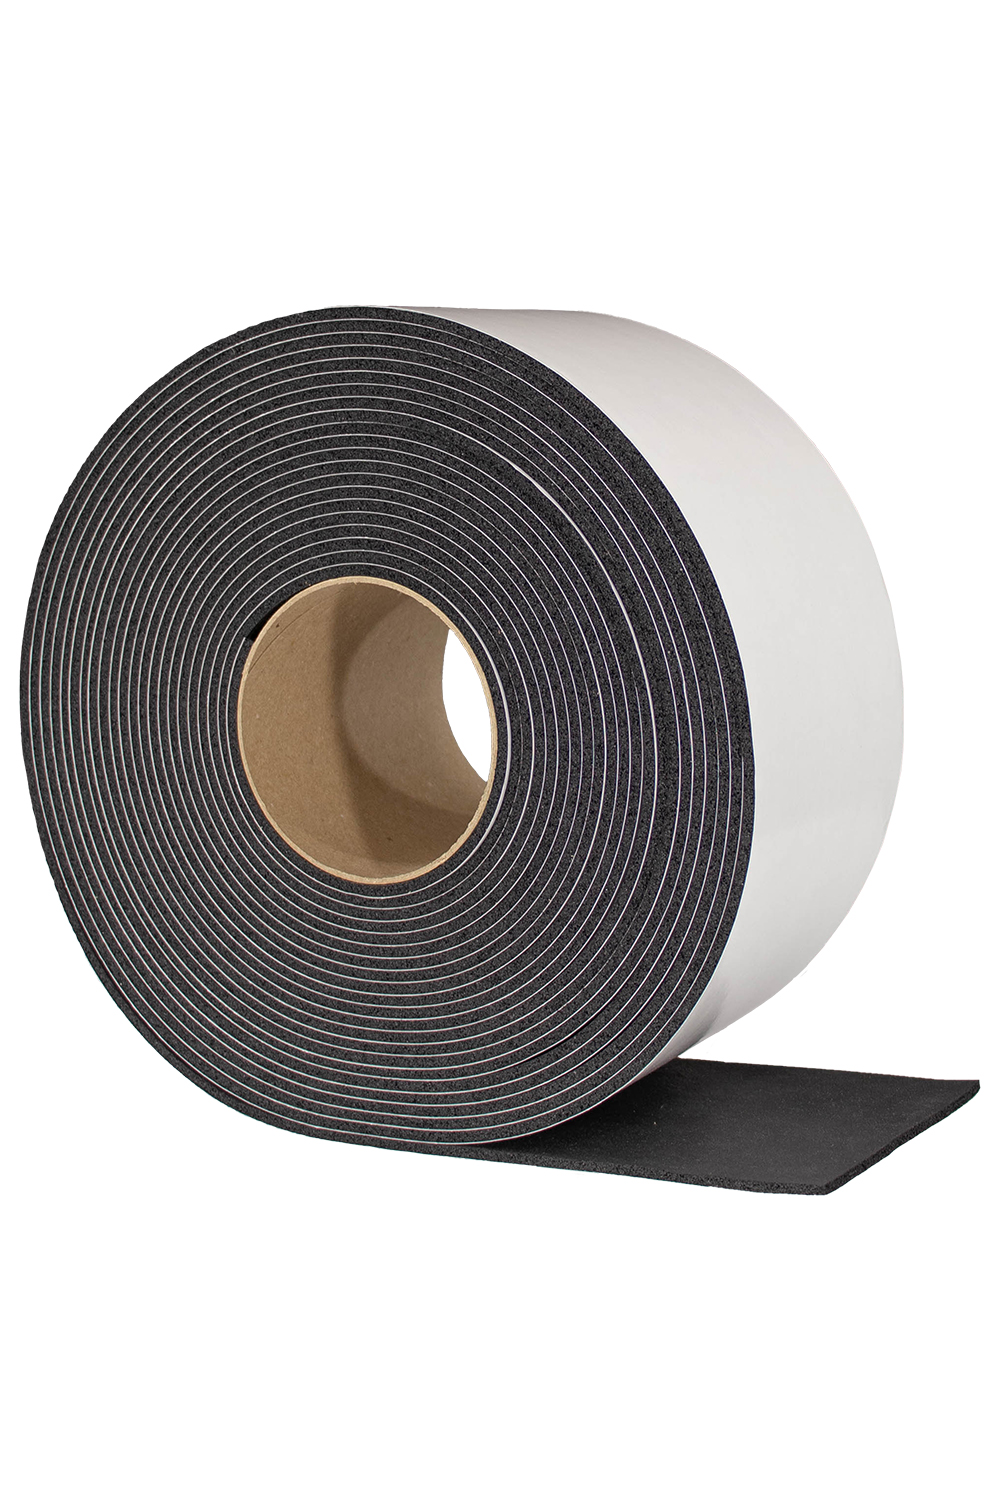 デッドニング すきまテープ タフロング 厚み 3 mm 幅 100 長さ 10 M テープ付 96％以上節約 戸当り すきま テープ 隙間 戸  スポンジ クッション 防音 吸音